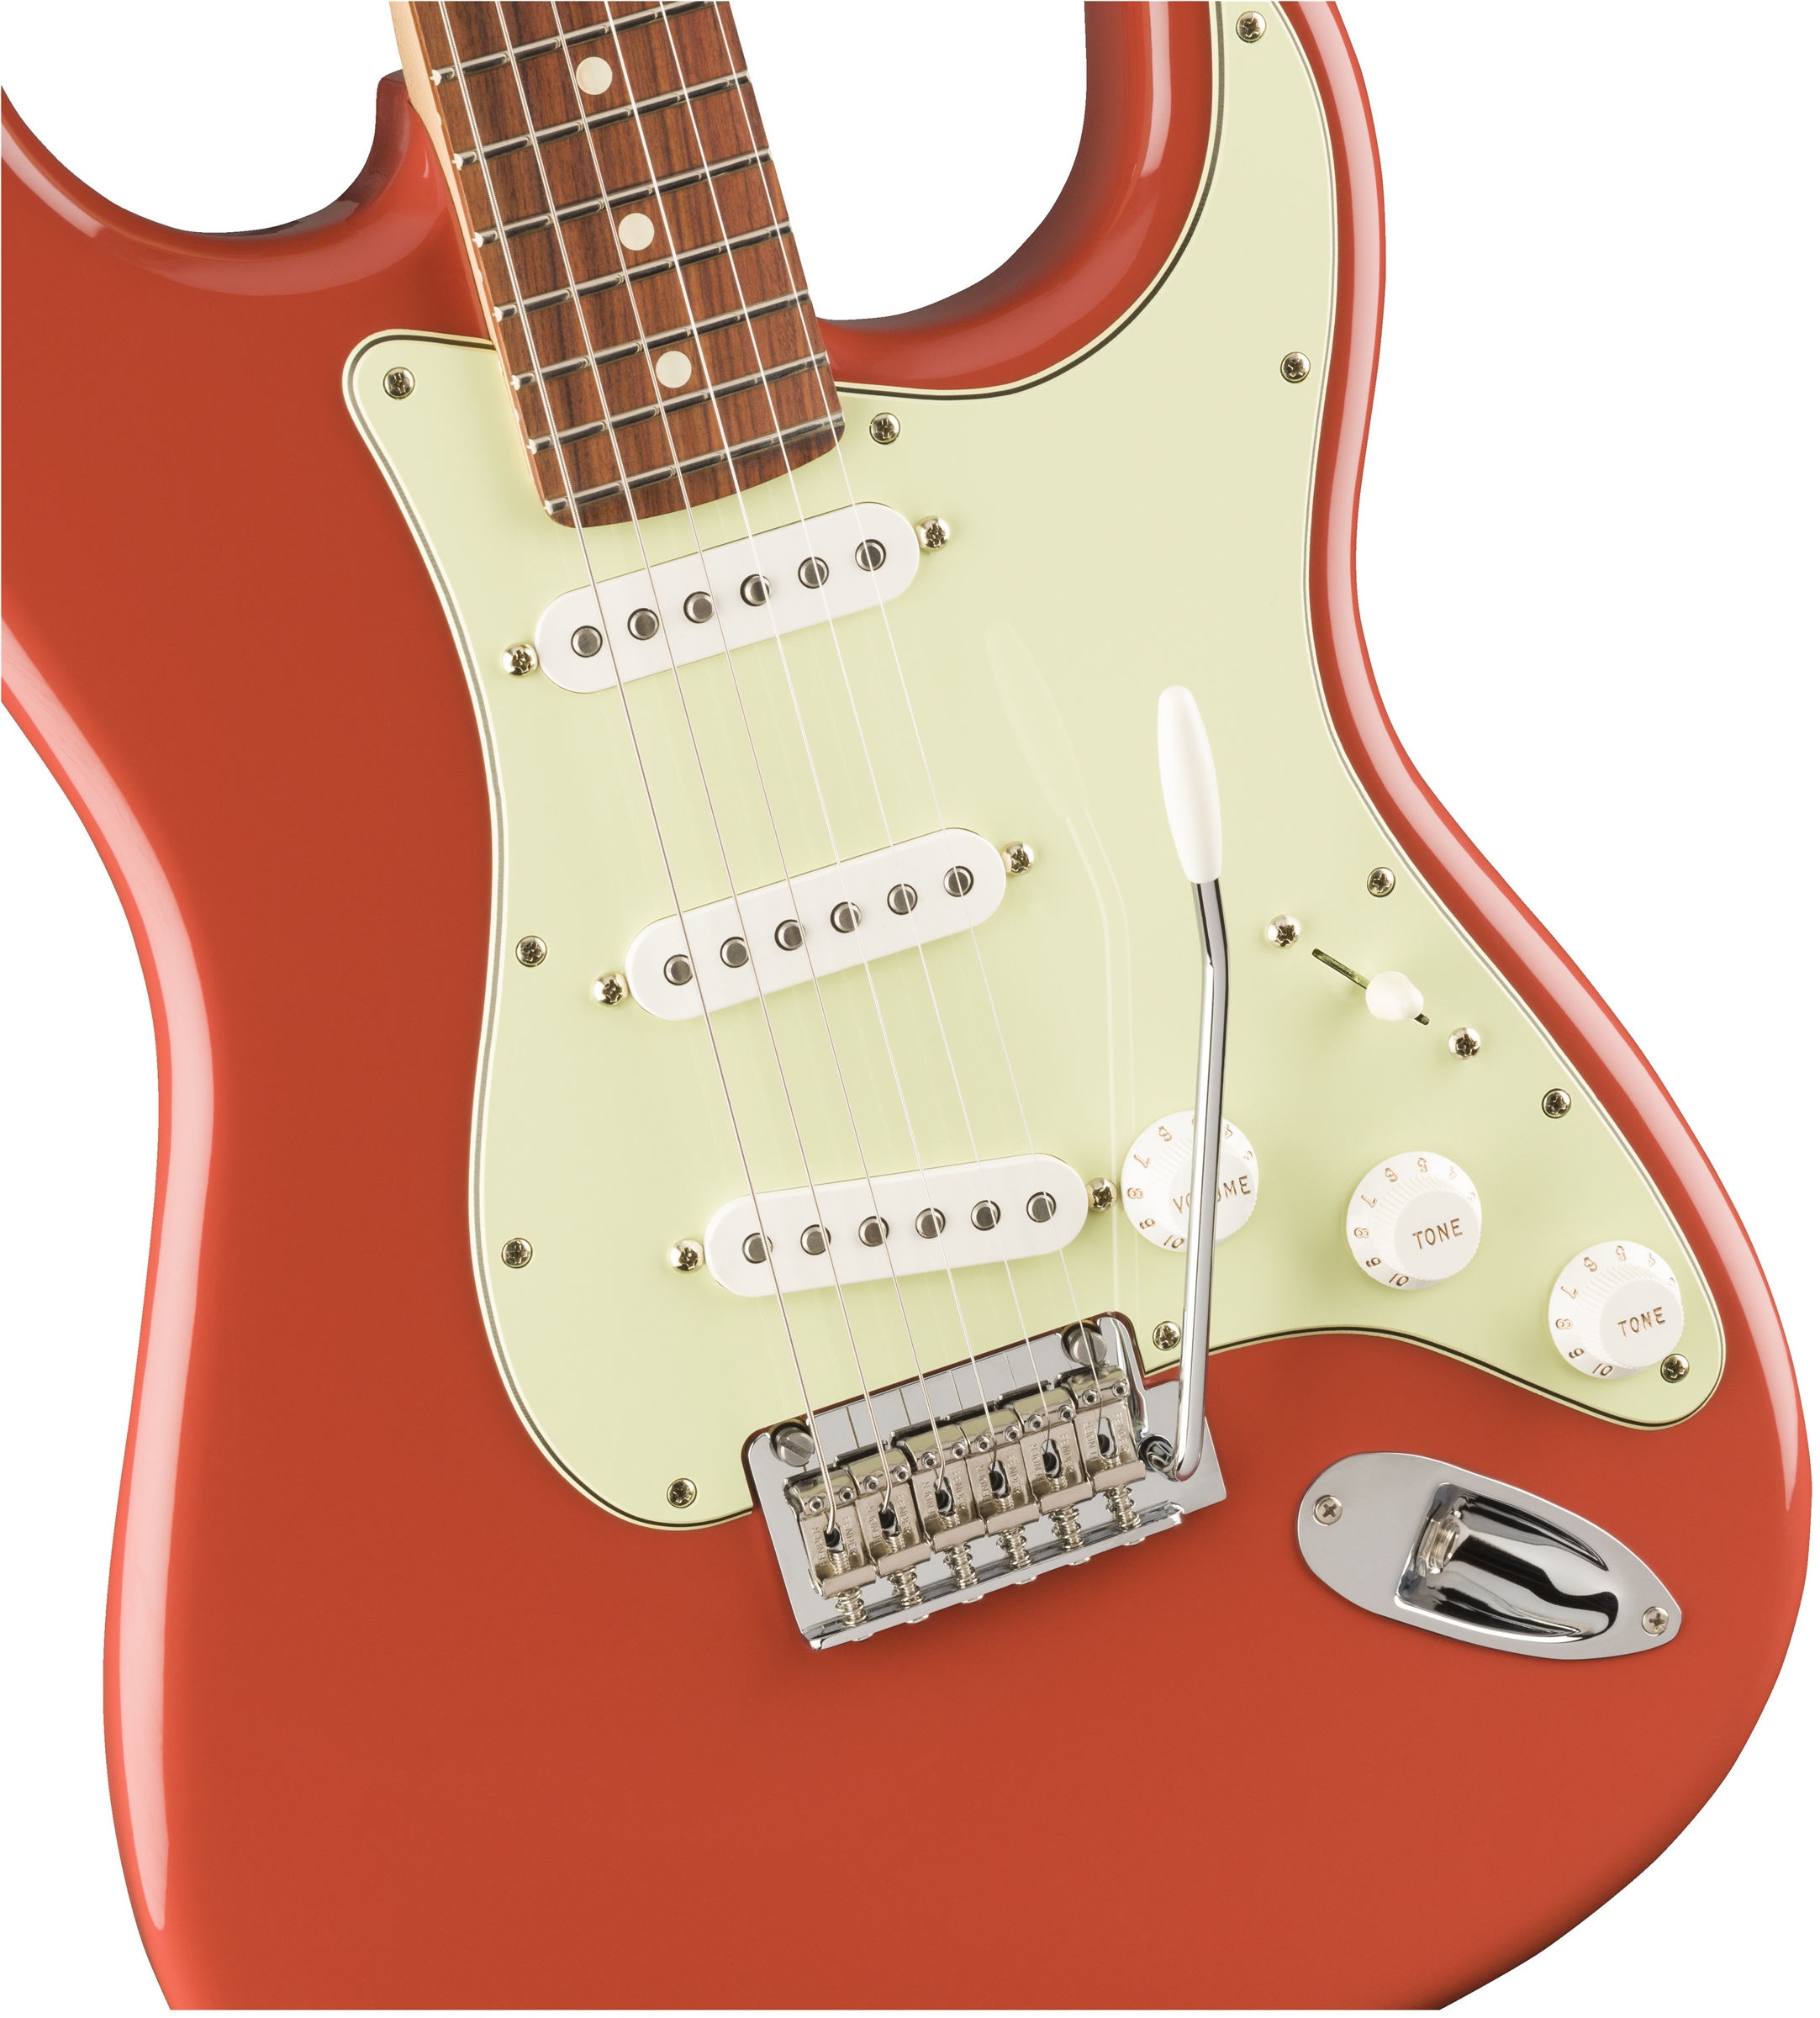 Fender Strat Player Ltd Mex 3s Trem Pf - Fiesta Red - Elektrische gitaar in Str-vorm - Variation 2